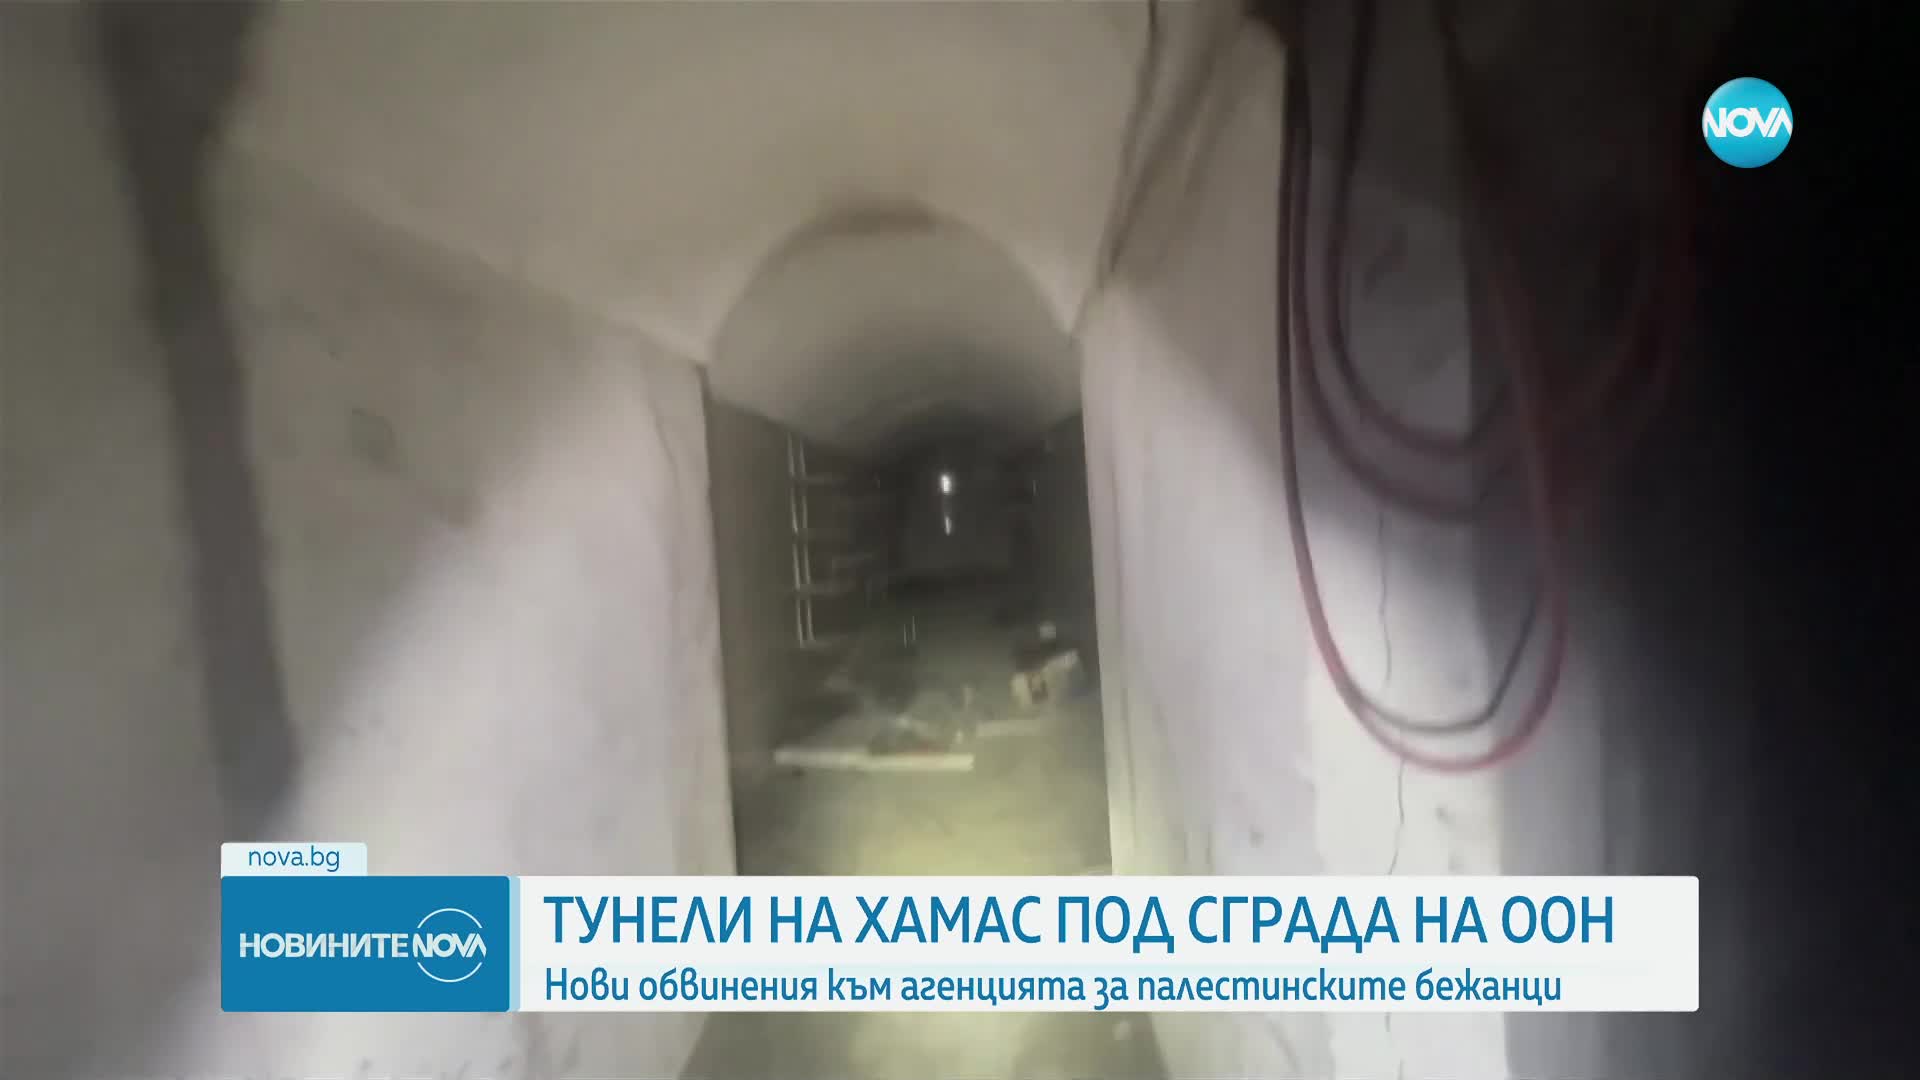 Израел откри тунели на „Хамас” под Агенцията на ООН